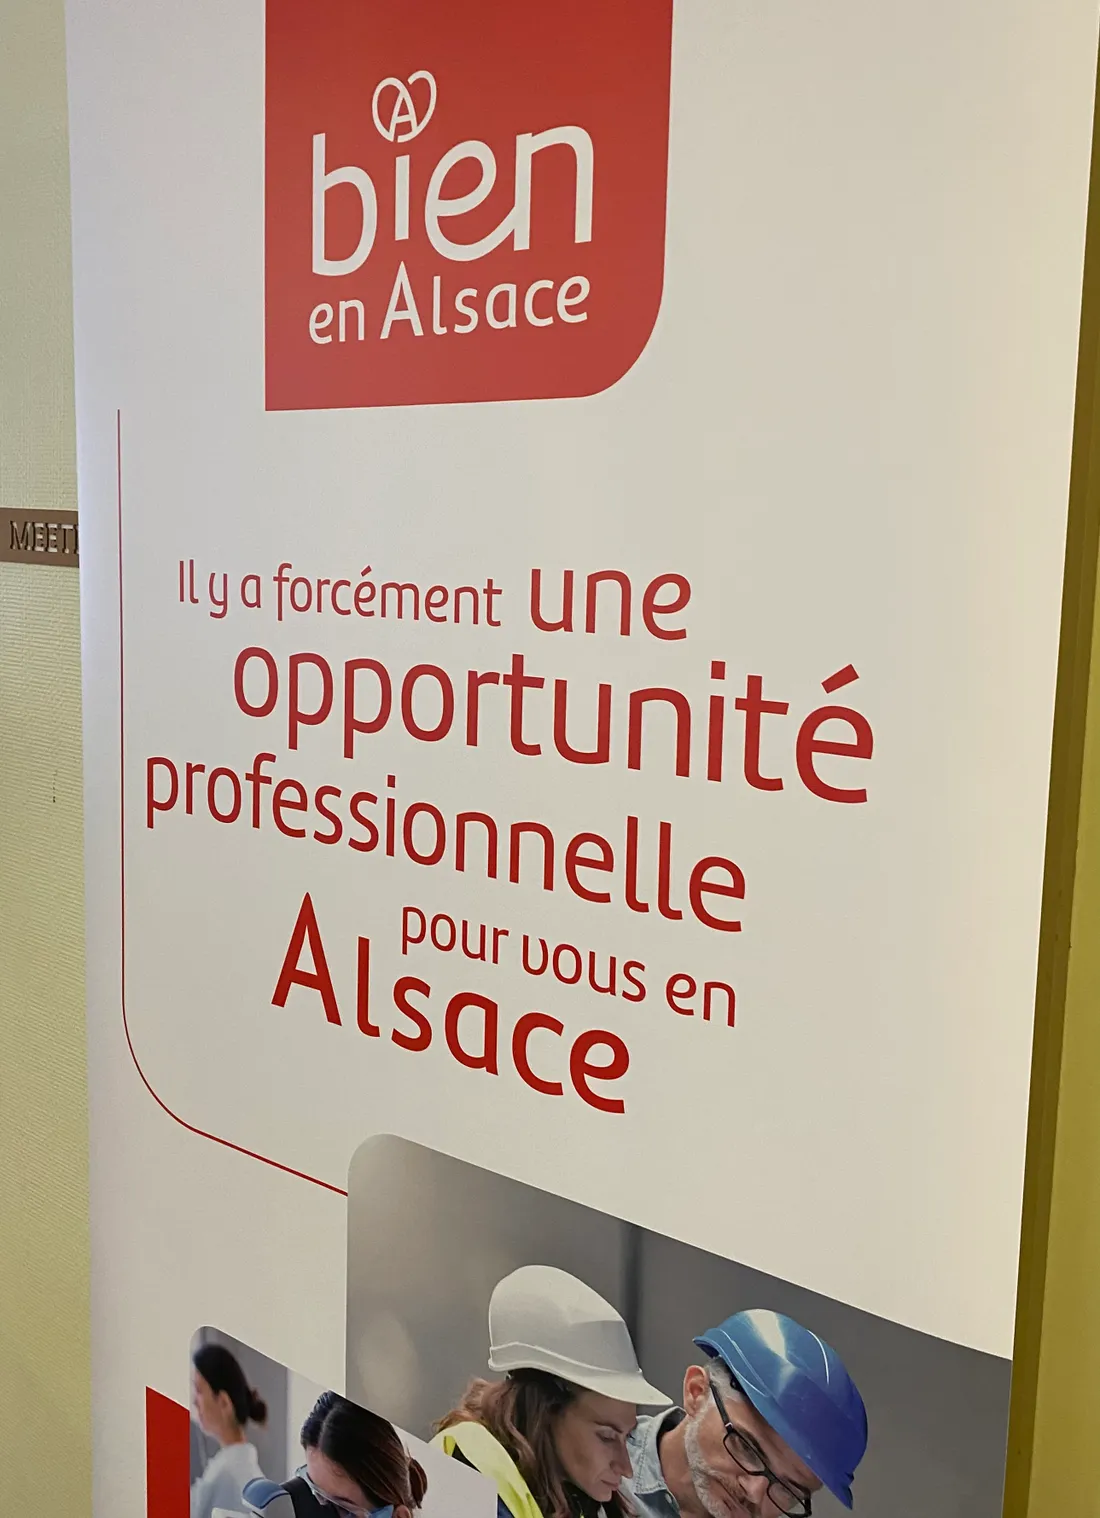 Lancement de la marque employeur "Bien en Alsace" par l'Adira